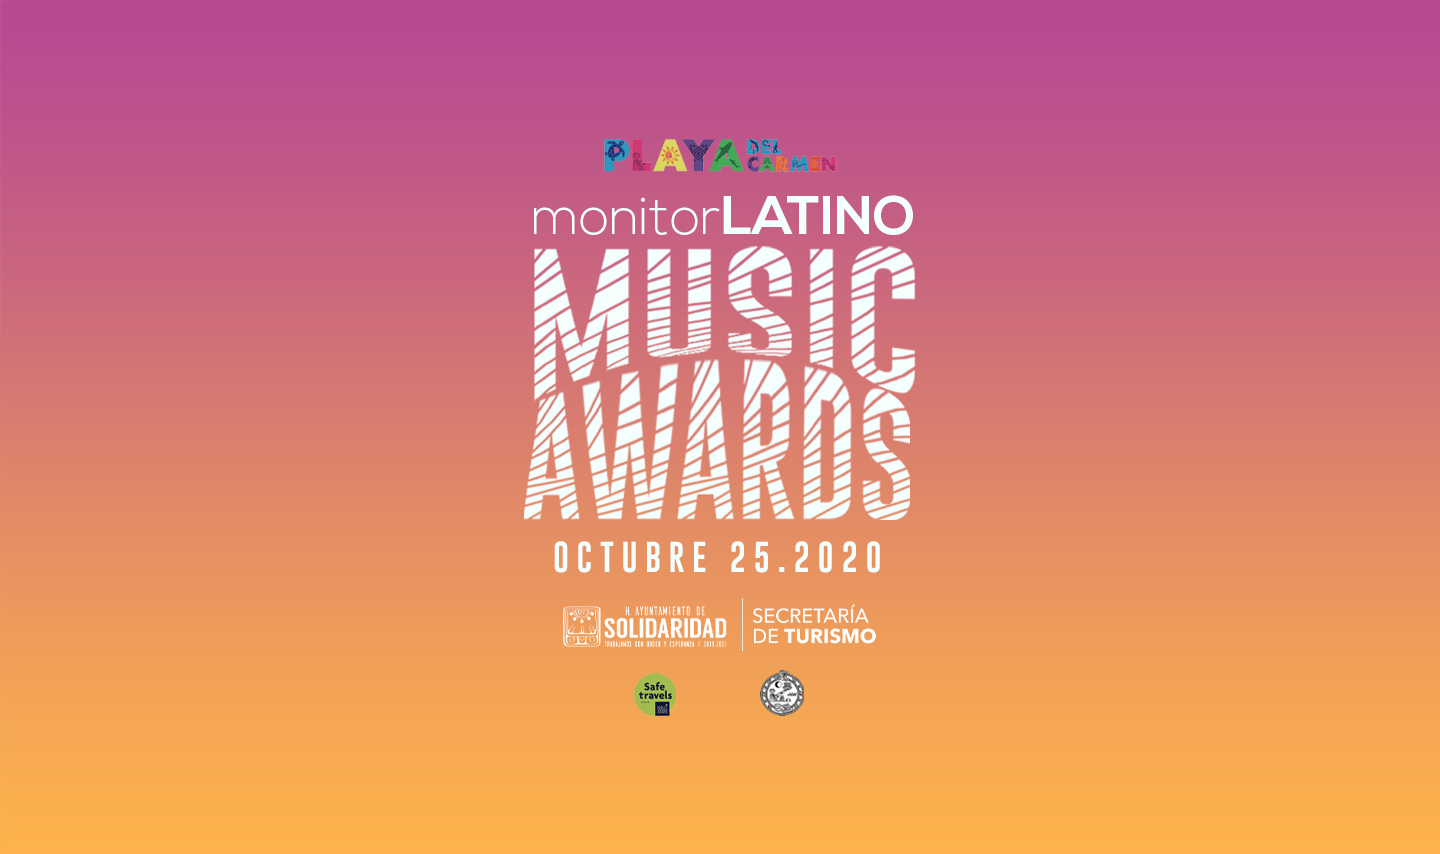 Por primera vez Monitor Latino reconocerá la música latina lanzada durante el último año en Hispanoamérica.